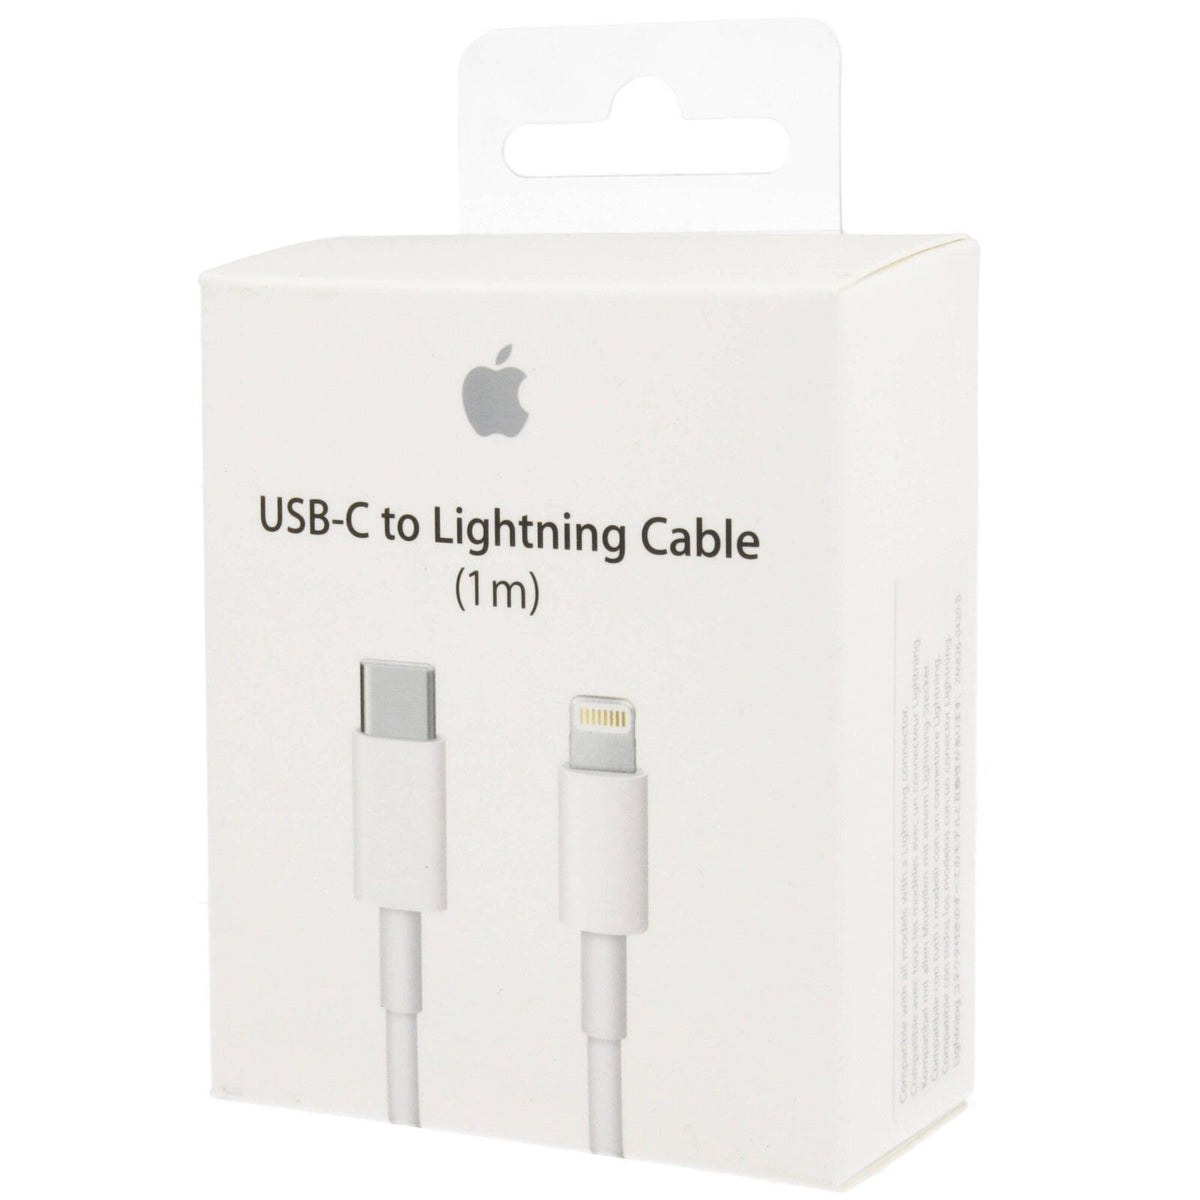 El mejor cable cargador para iPhone esta en